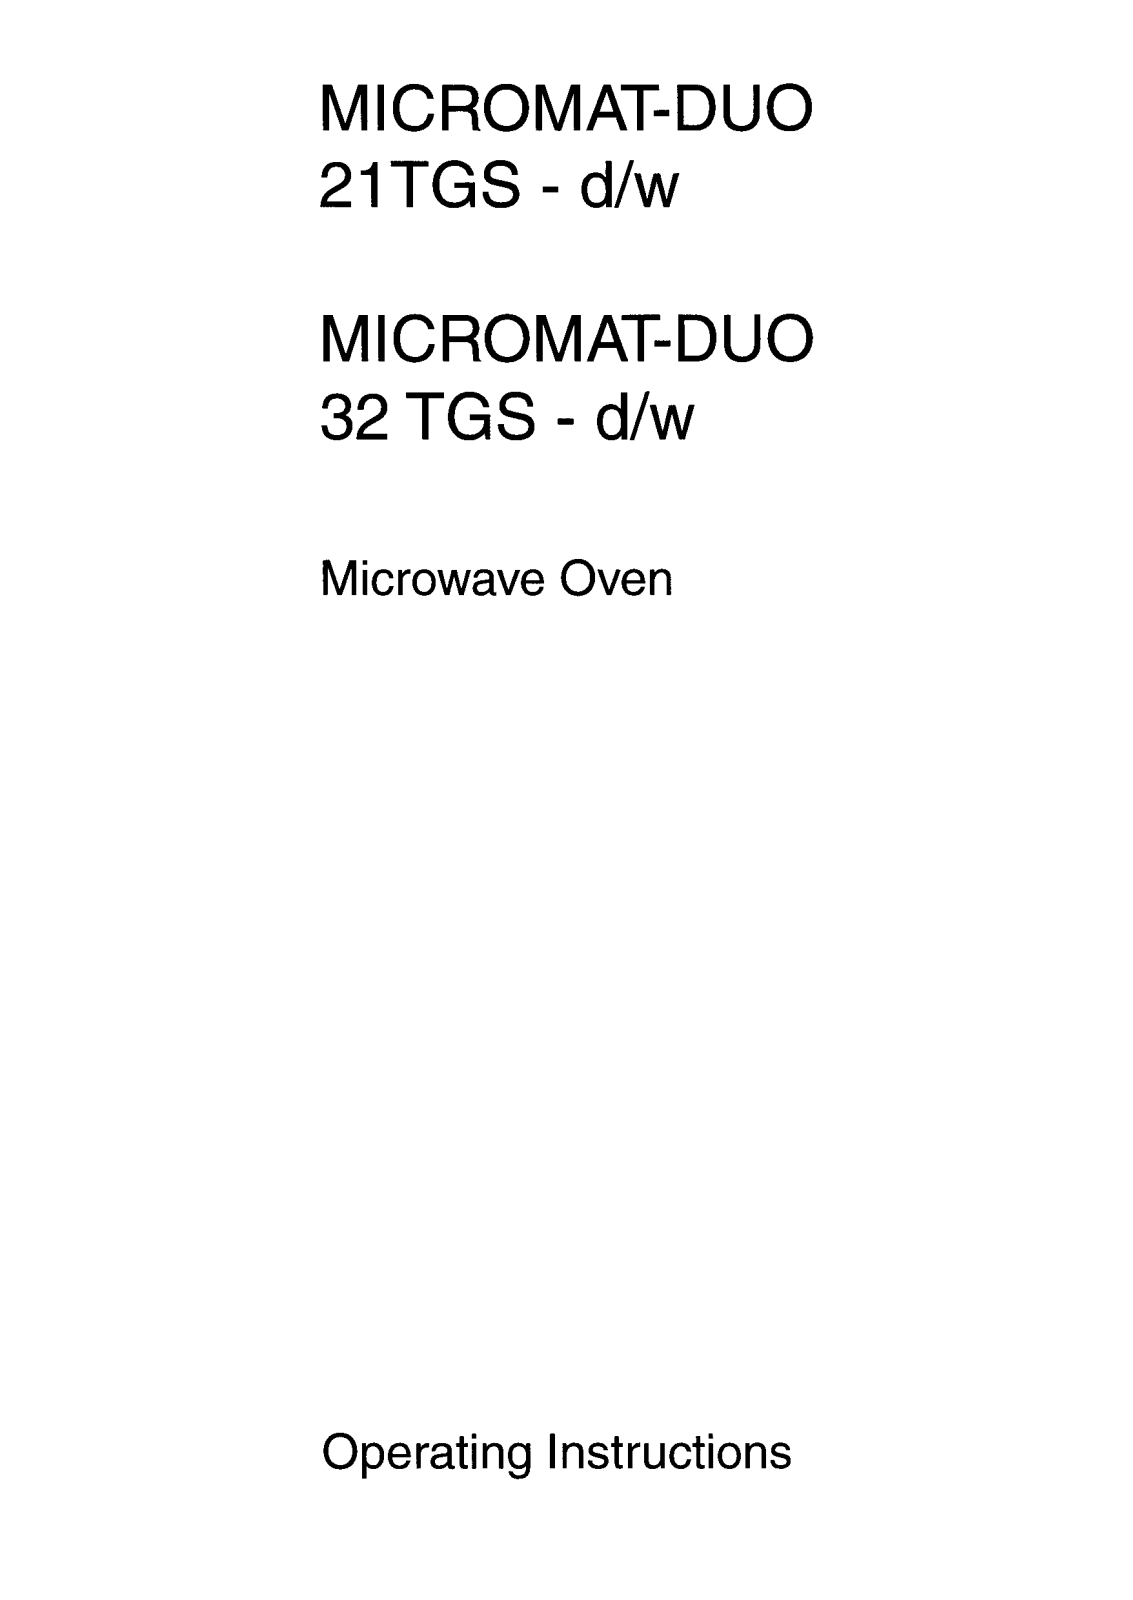 AEG-Electrolux MCDUO21TGS-D-GB, MCDUO32TGS-D-GB, MICROMATDUO32TGS, MCDUO21TGS-W-GB User Manual